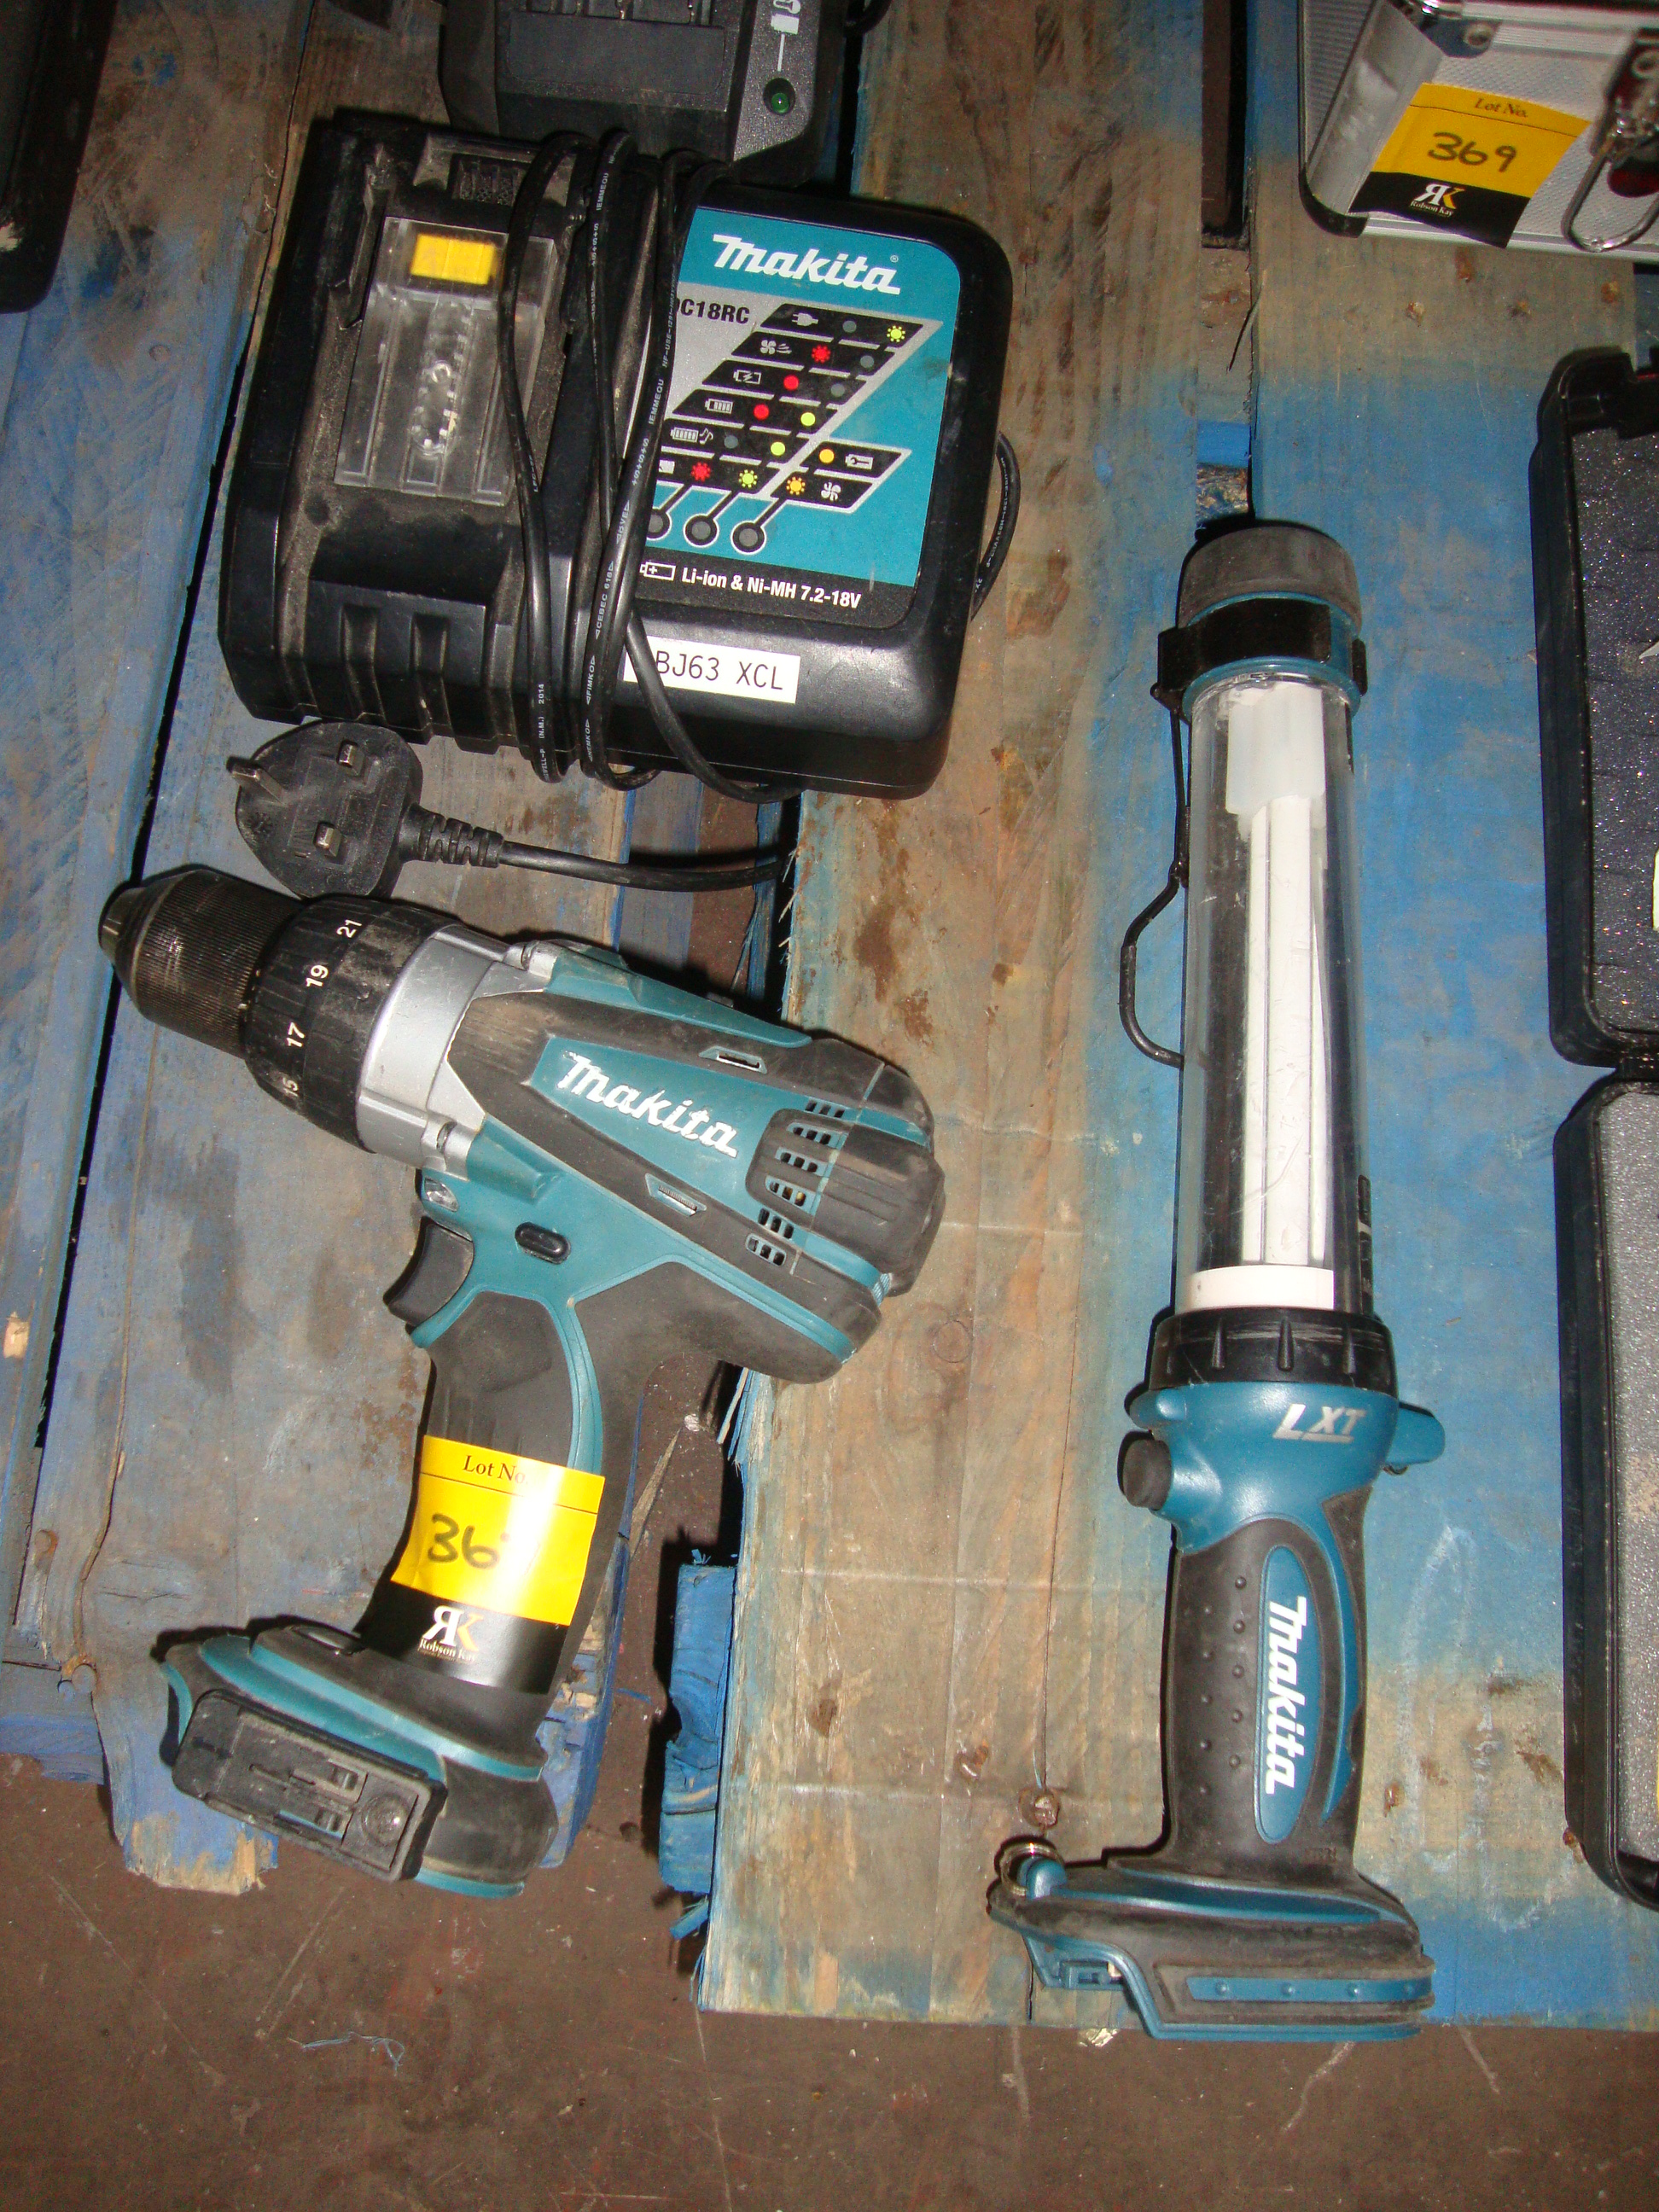 Makita power tool lot comprising cordless drill, cordless ...